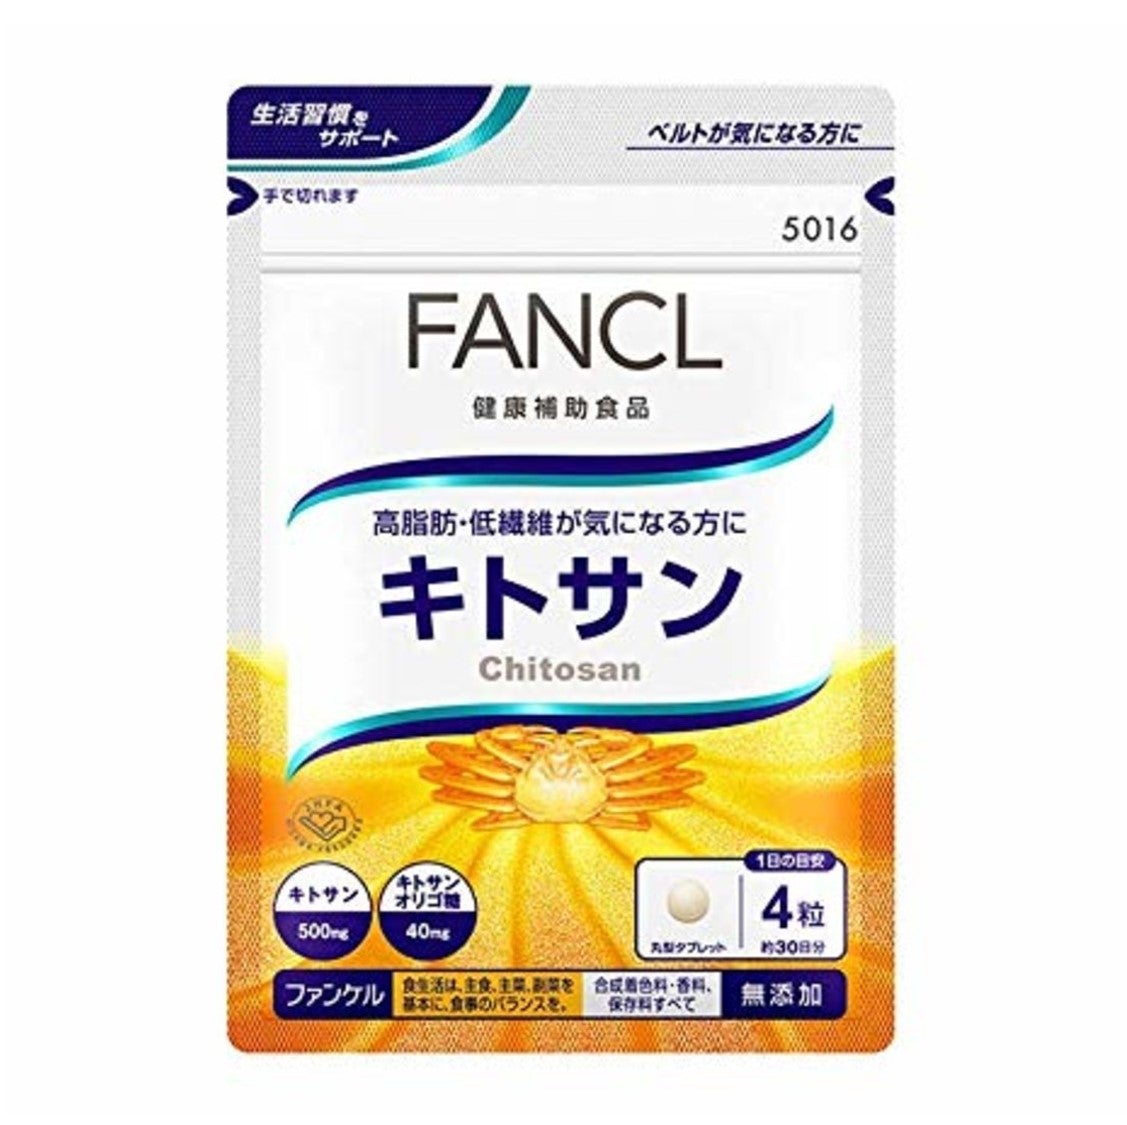 fancl-chitosan